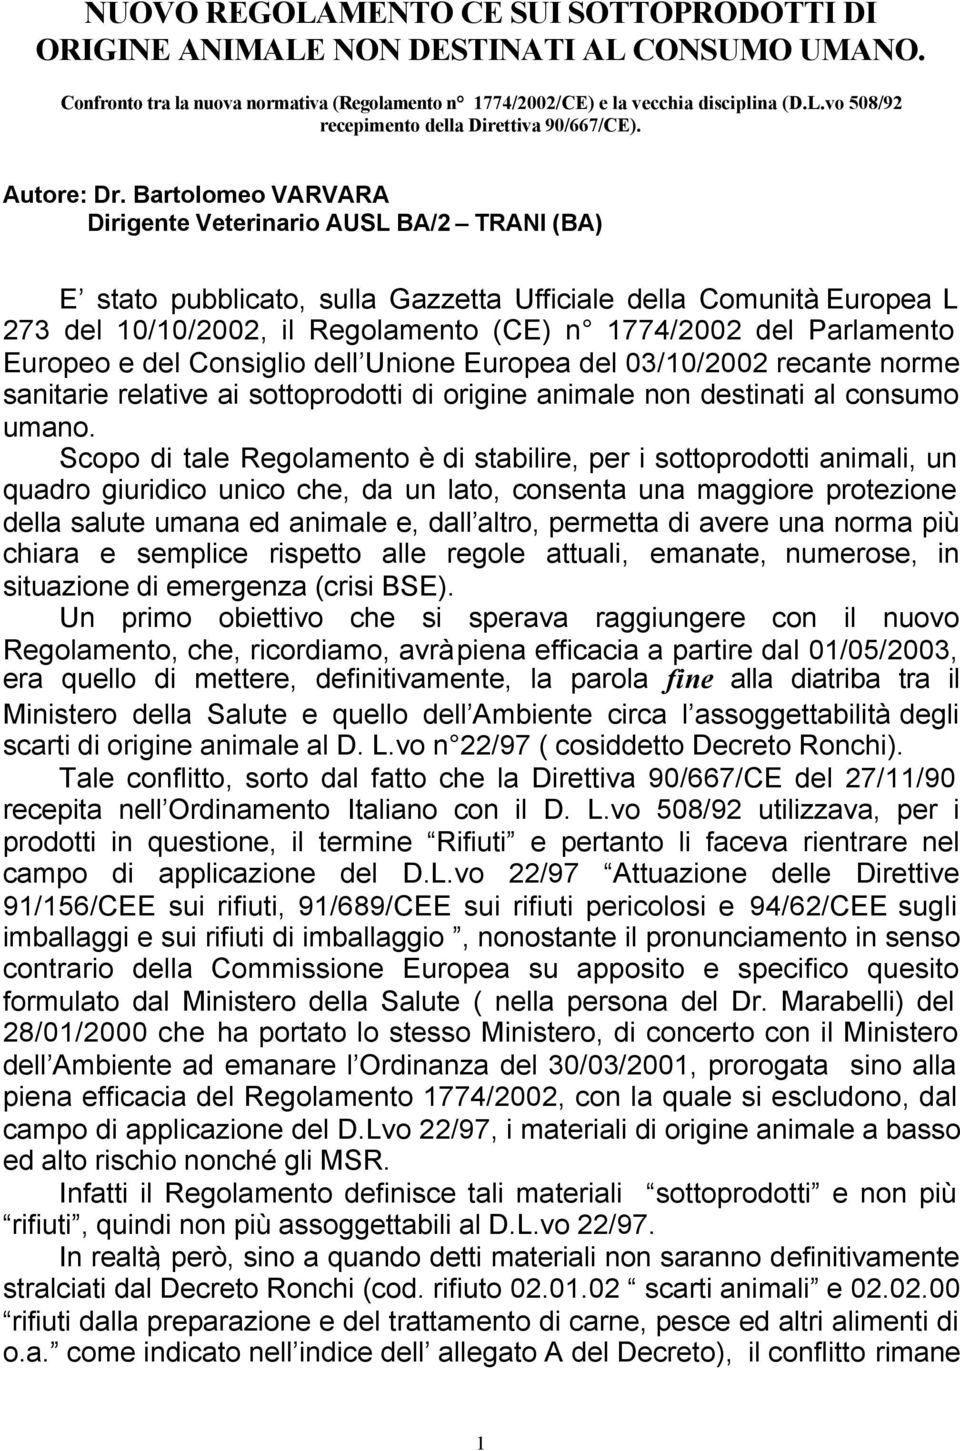 Bartolomeo VARVARA Dirigente Veterinario AUSL BA/2 TRANI (BA) E stato pubblicato, sulla Gazzetta Ufficiale della Comunità Europea L 273 del 10/10/2002, il Regolamento (CE) n 1774/2002 del Parlamento